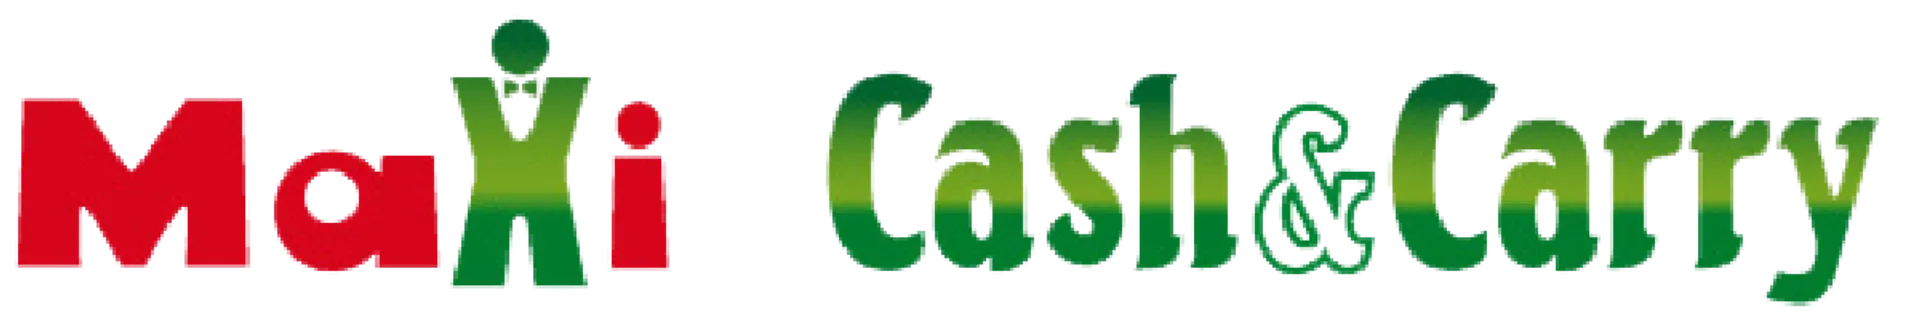 MAXI CASH&CARRY logo